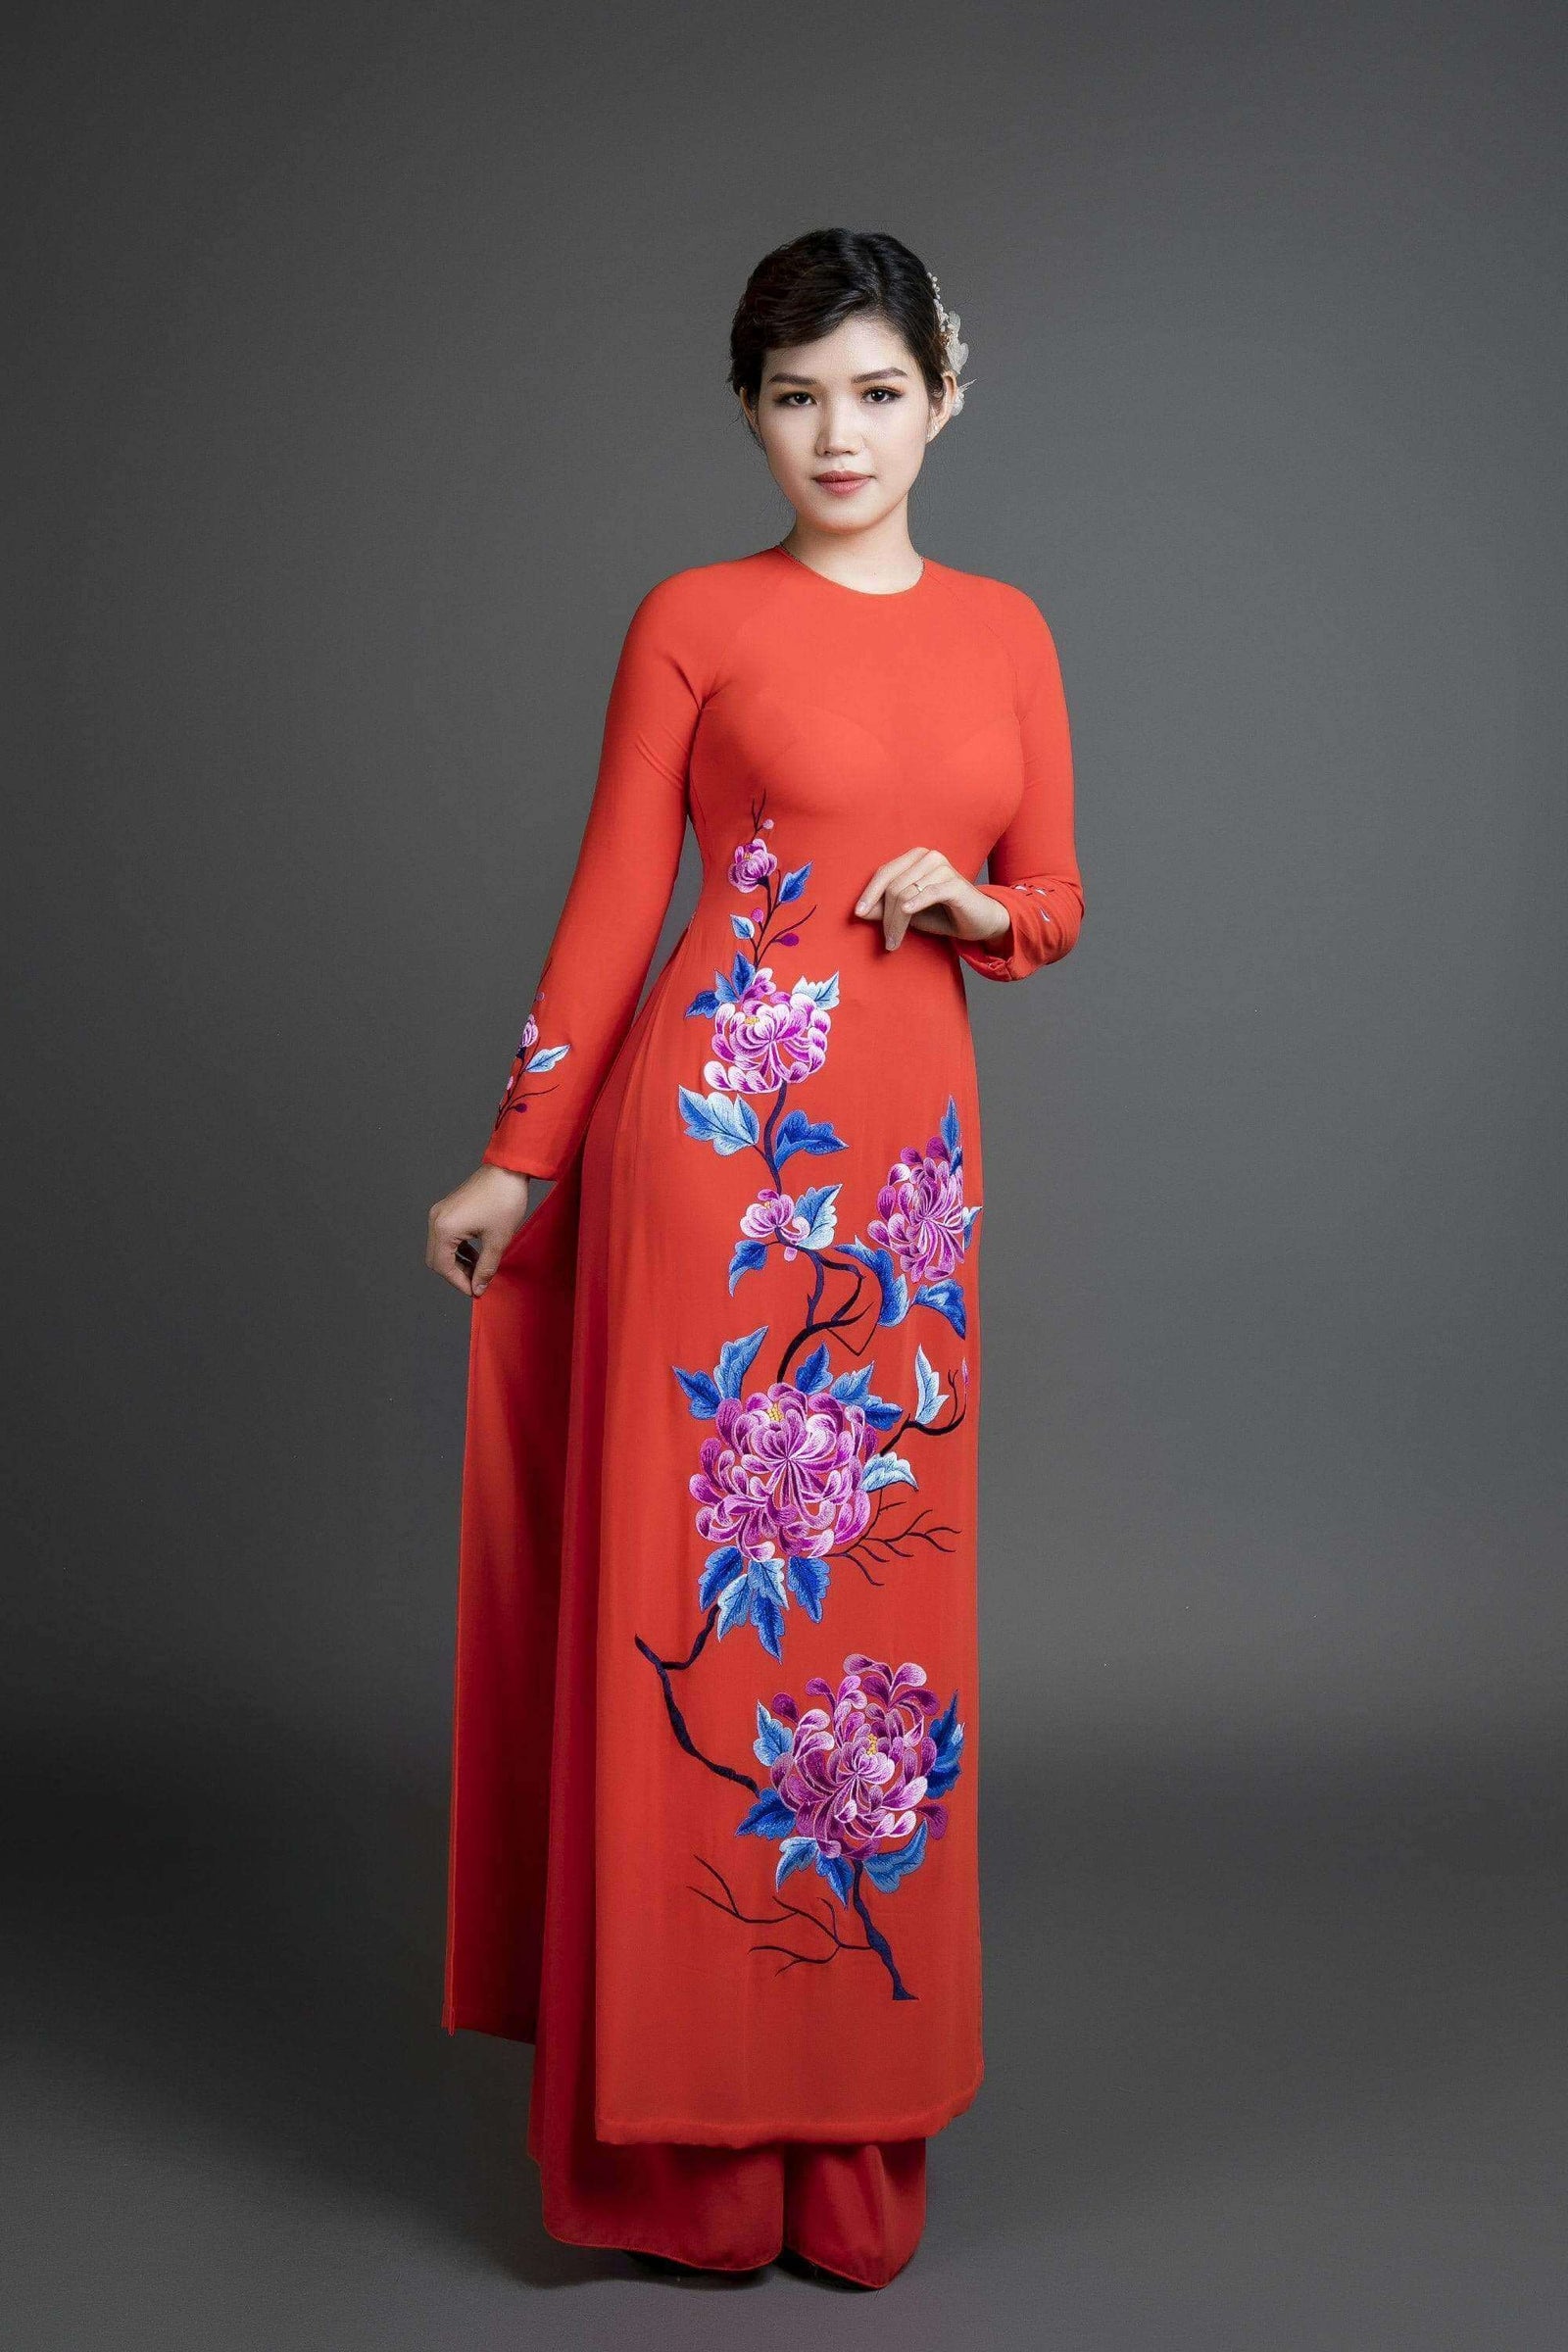 Áo dài Việt Nam là niềm tự hào của người Việt, và nó đại diện cho vẻ đẹp truyền thống và tinh tế. Nếu bạn đang tìm kiếm một bộ áo dài để mặc vào dịp đặc biệt, hãy để chúng tôi giúp bạn tìm kiếm bộ áo dài hoàn hảo.